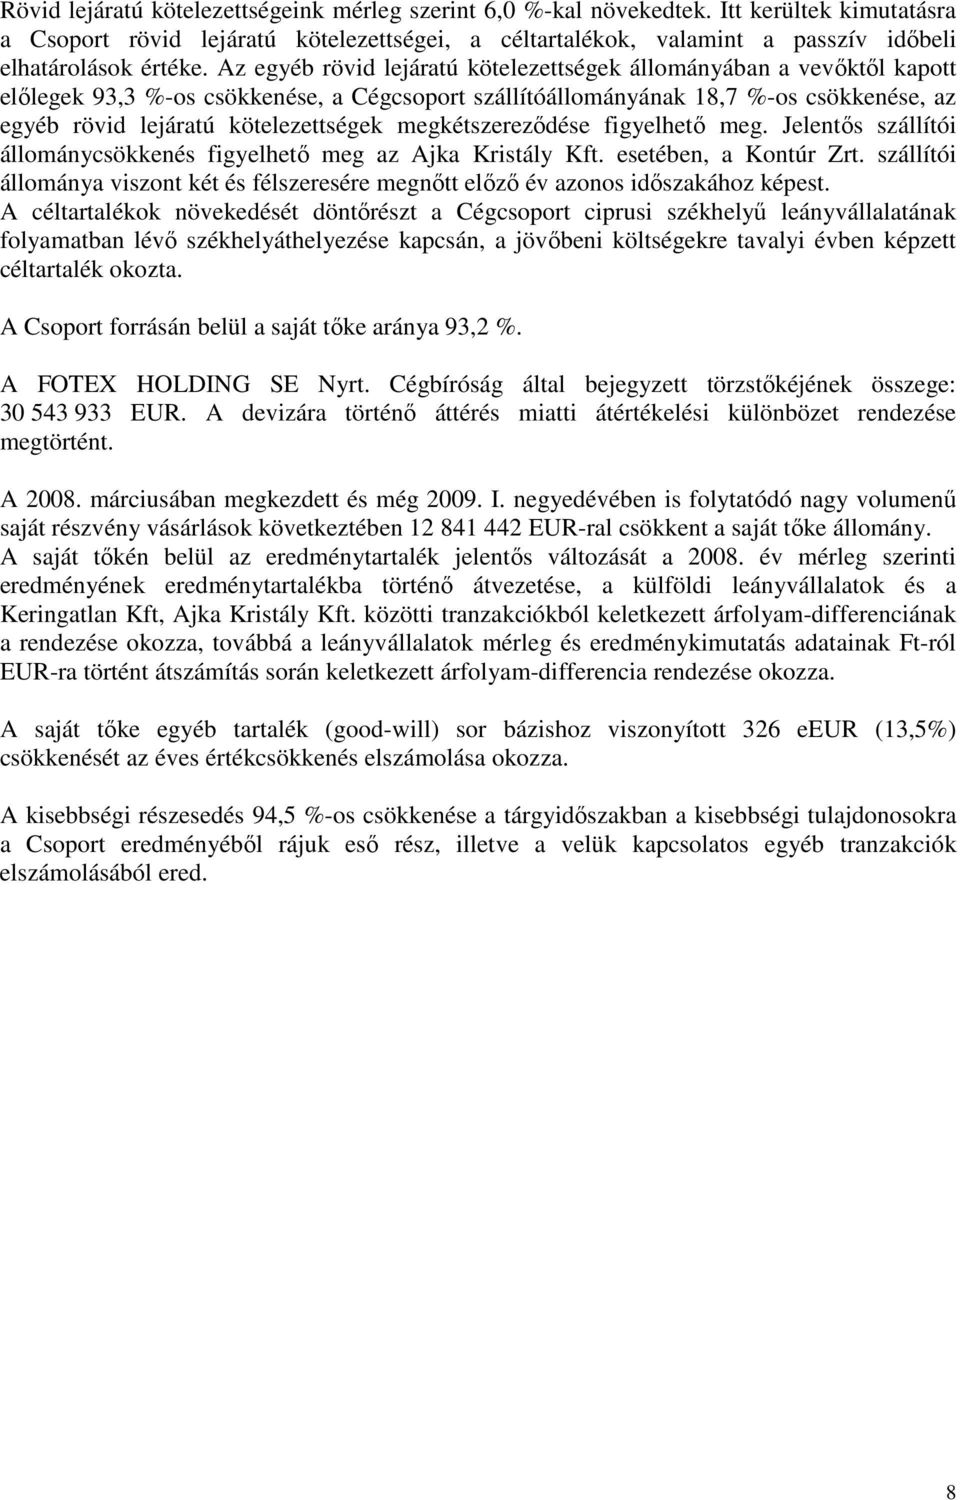 Az egyéb rövid lejáratú kötelezettségek állományában a vevıktıl kapott elılegek 93,3 %-os csökkenése, a Cégcsoport szállítóállományának 18,7 %-os csökkenése, az egyéb rövid lejáratú kötelezettségek